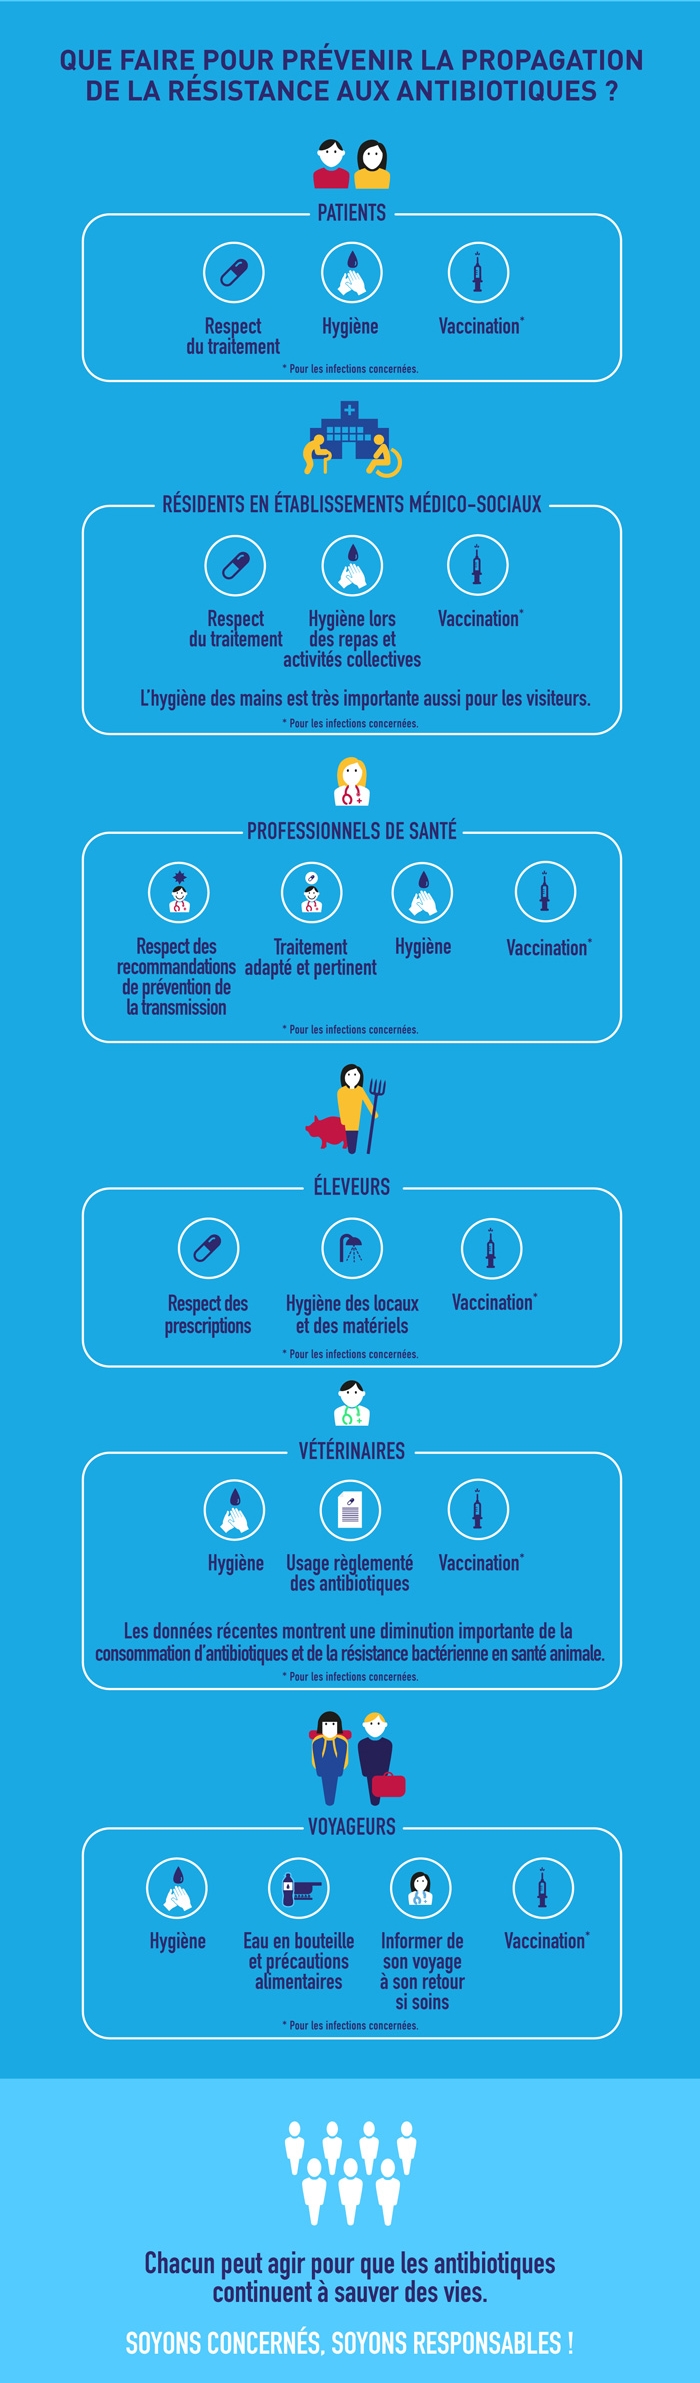 infographie prévenir la propagation de la résistance aux antibiotiques